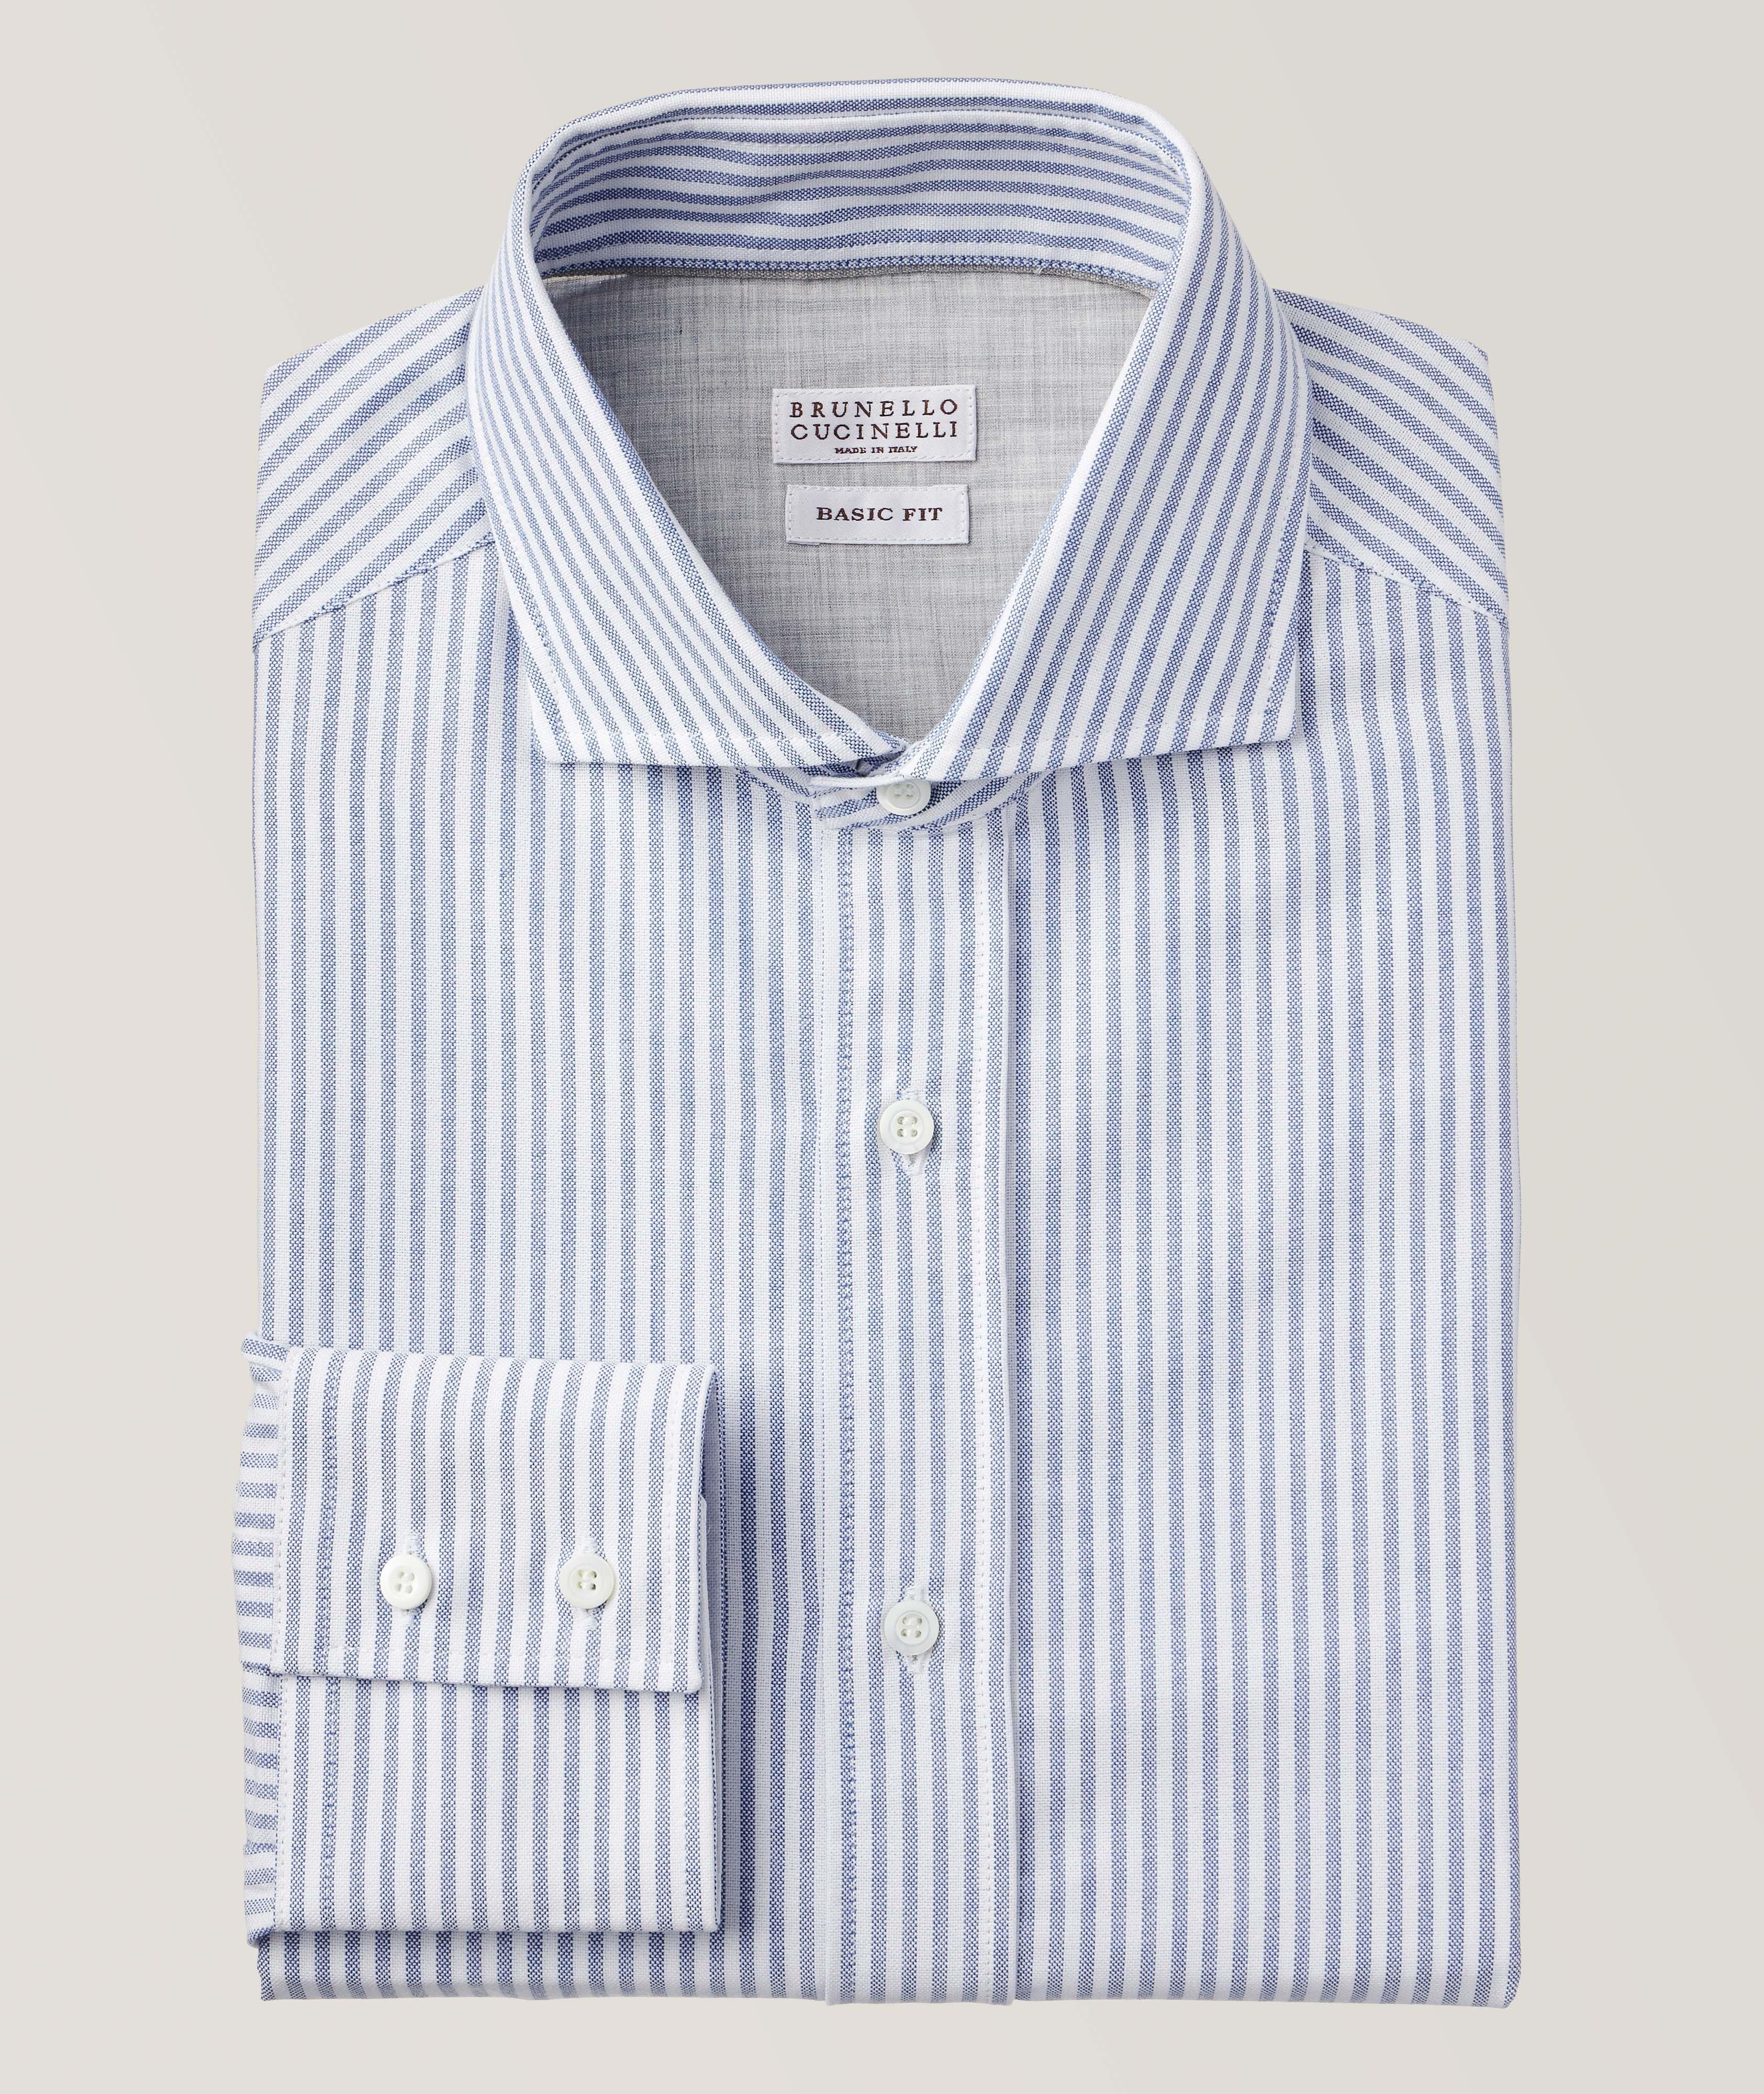 Brunello Cucinelli Striped Cotton Oxford Shirt